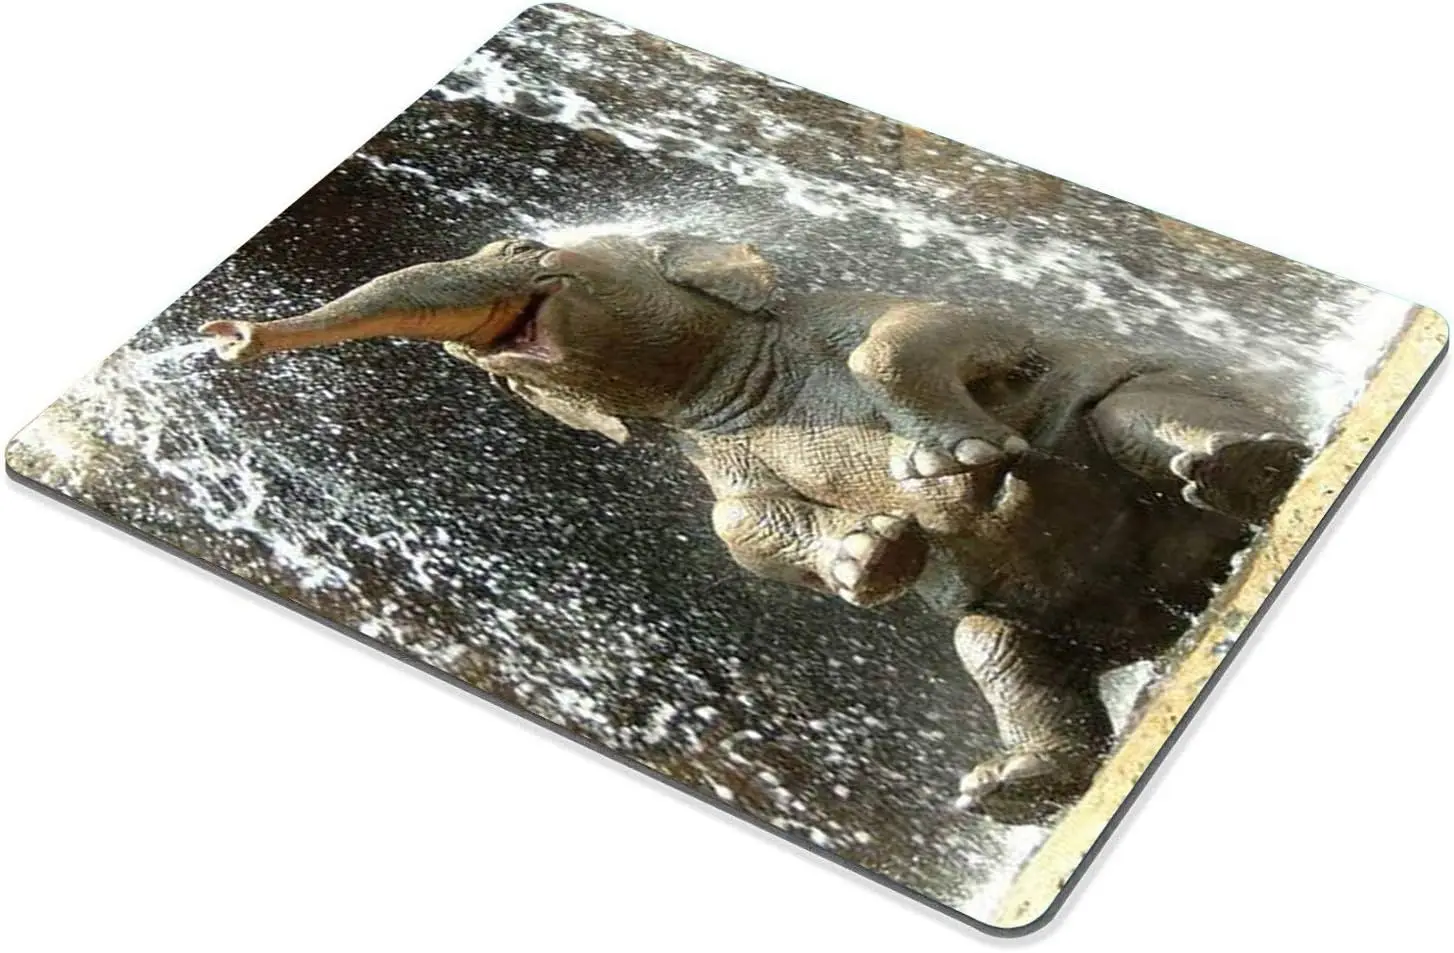 Elephant Happy Большой коврик для мыши Коврик для мыши Отличная идея подарка 9,5 х 7,9 дюйма Водонепроницаемая резина для ноутбука Компьютер Игры Дом Изображение 1 